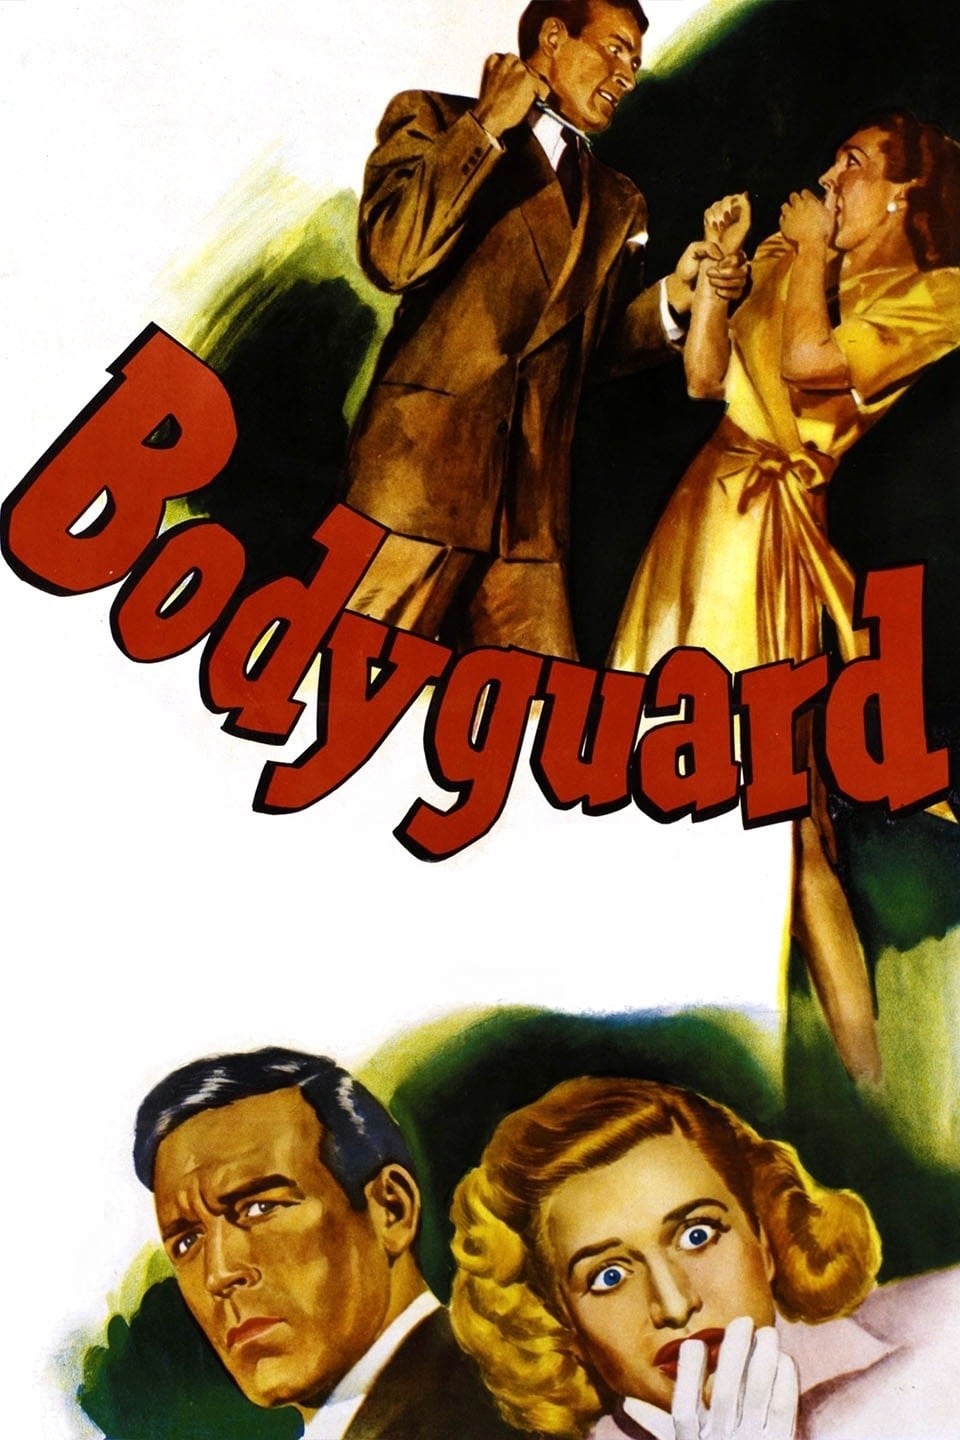 Bodyguard (1948)